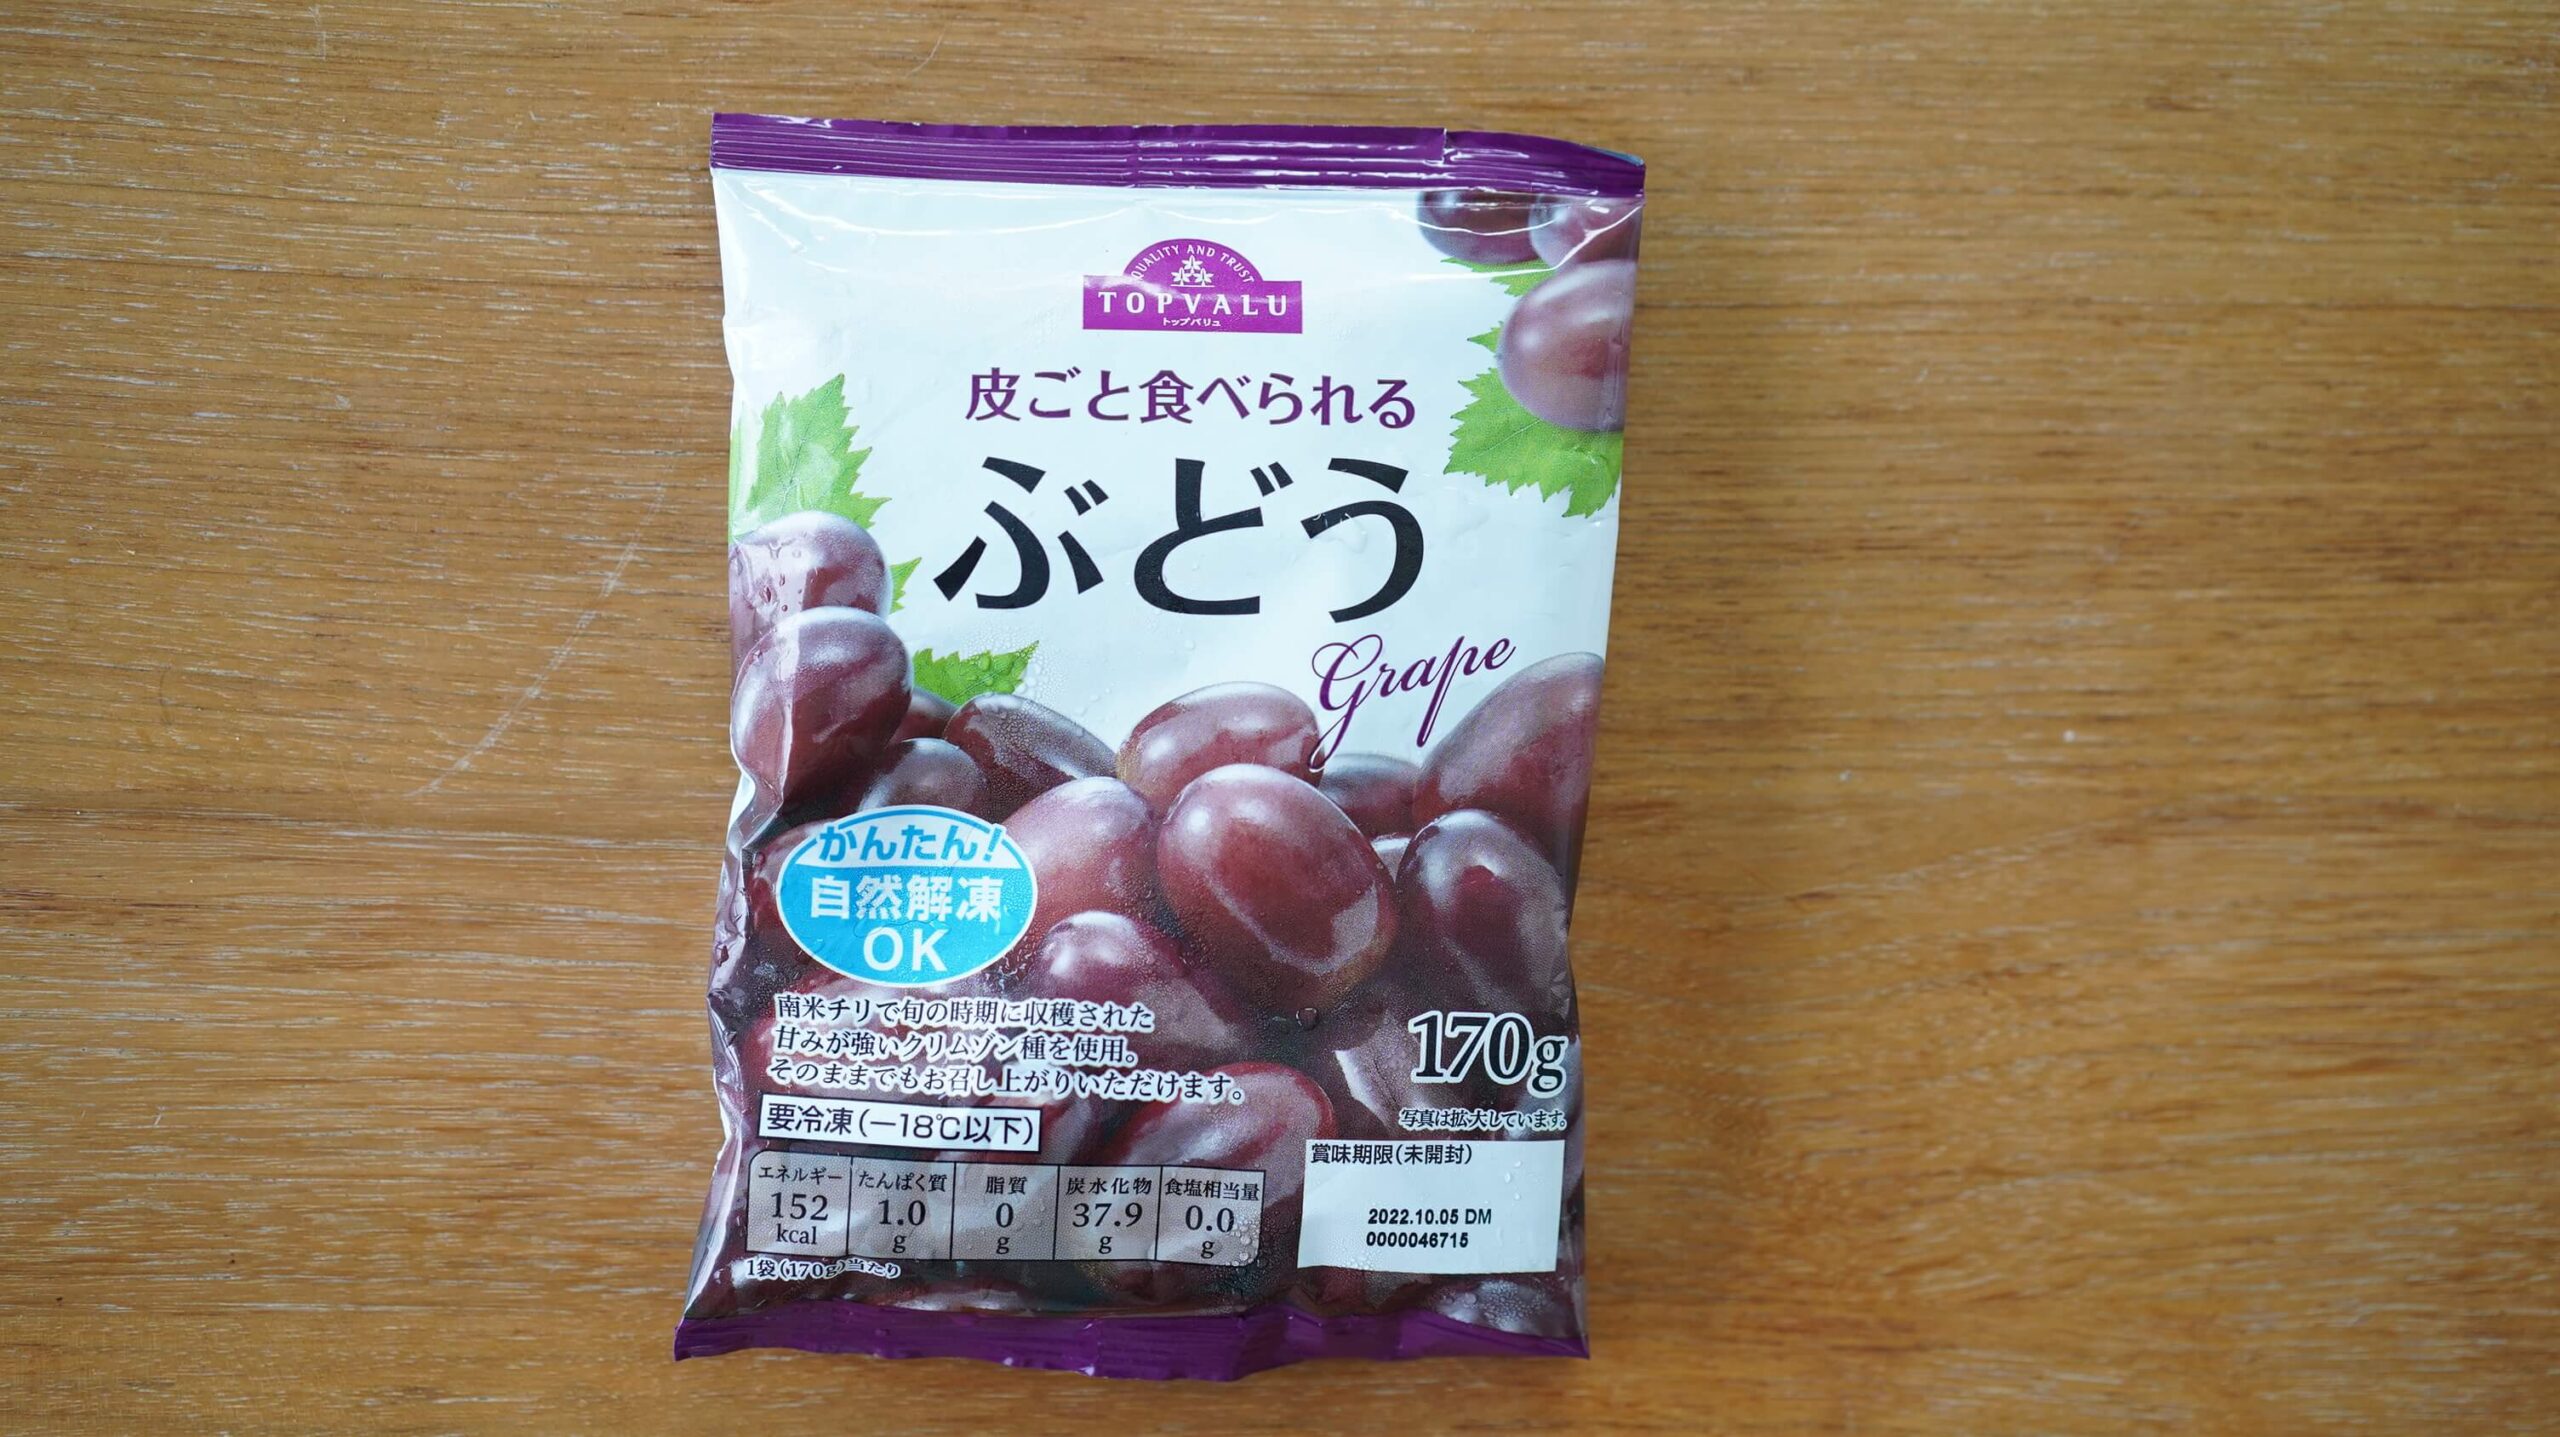 イオンの冷凍食品フルーツ「皮ごと食べられるぶどう」のパッケージ写真